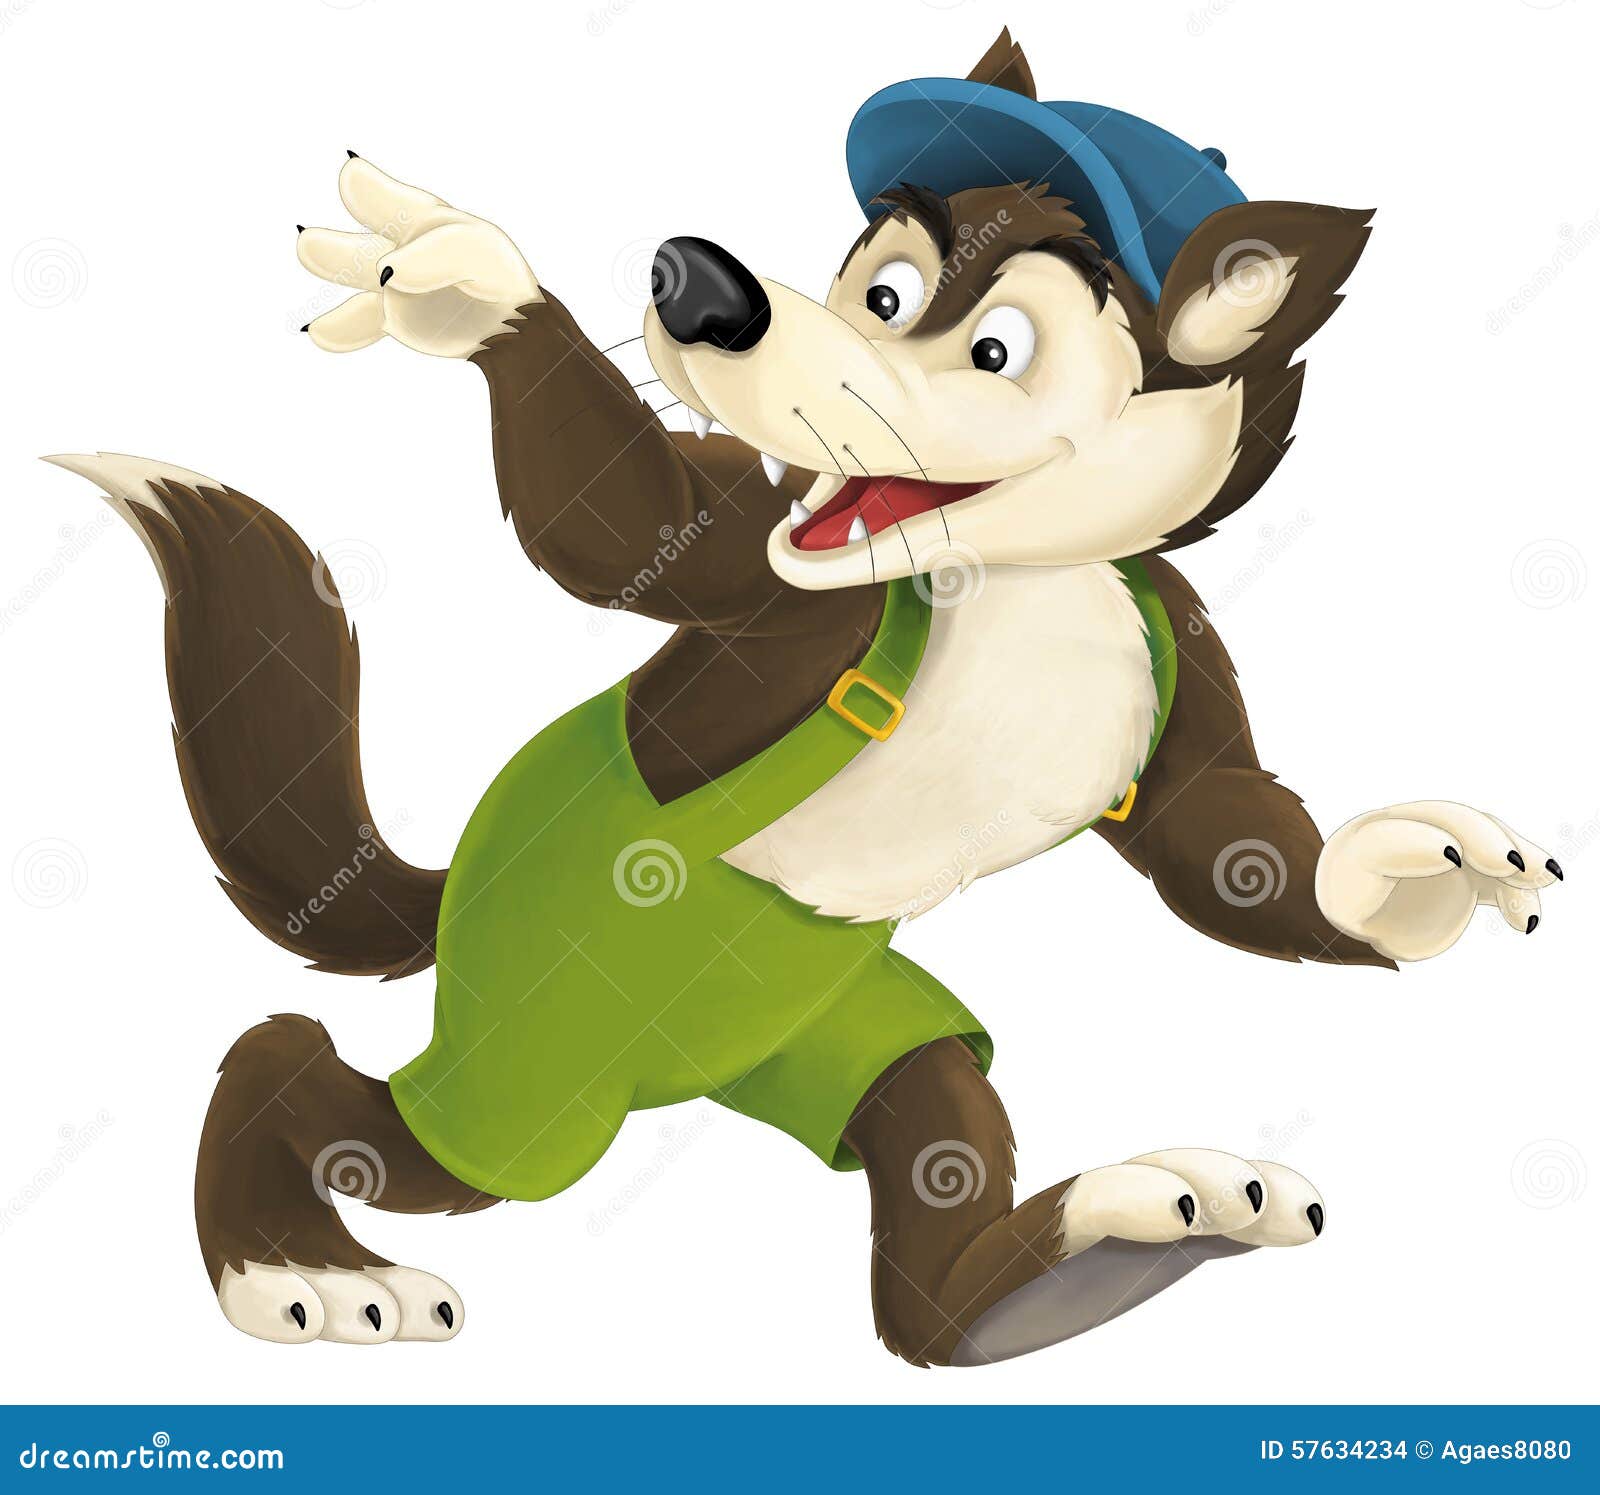 The cartoon wolf stock illustration. Illustration of clipart - 57634234